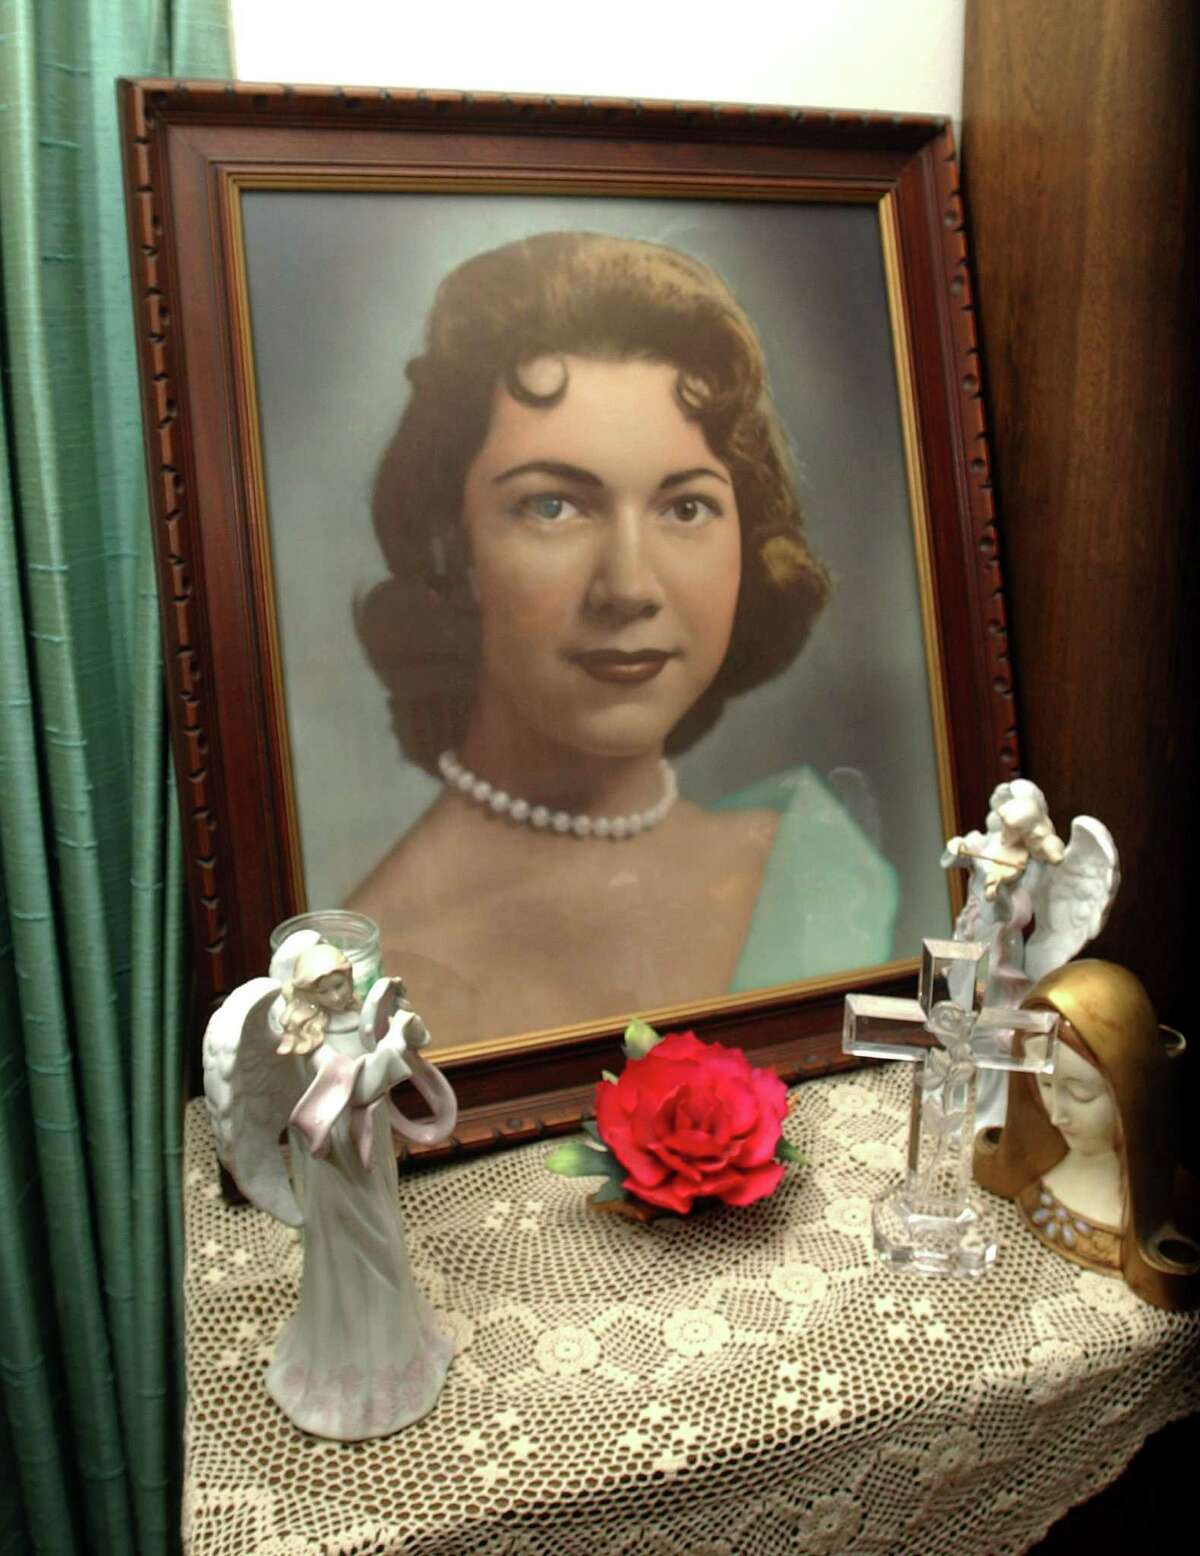 A portrait of Irene Garza, 25, is seen at her aunt’s home Herlynda De La Vina in Edinburg. Irene was killed in 1960.